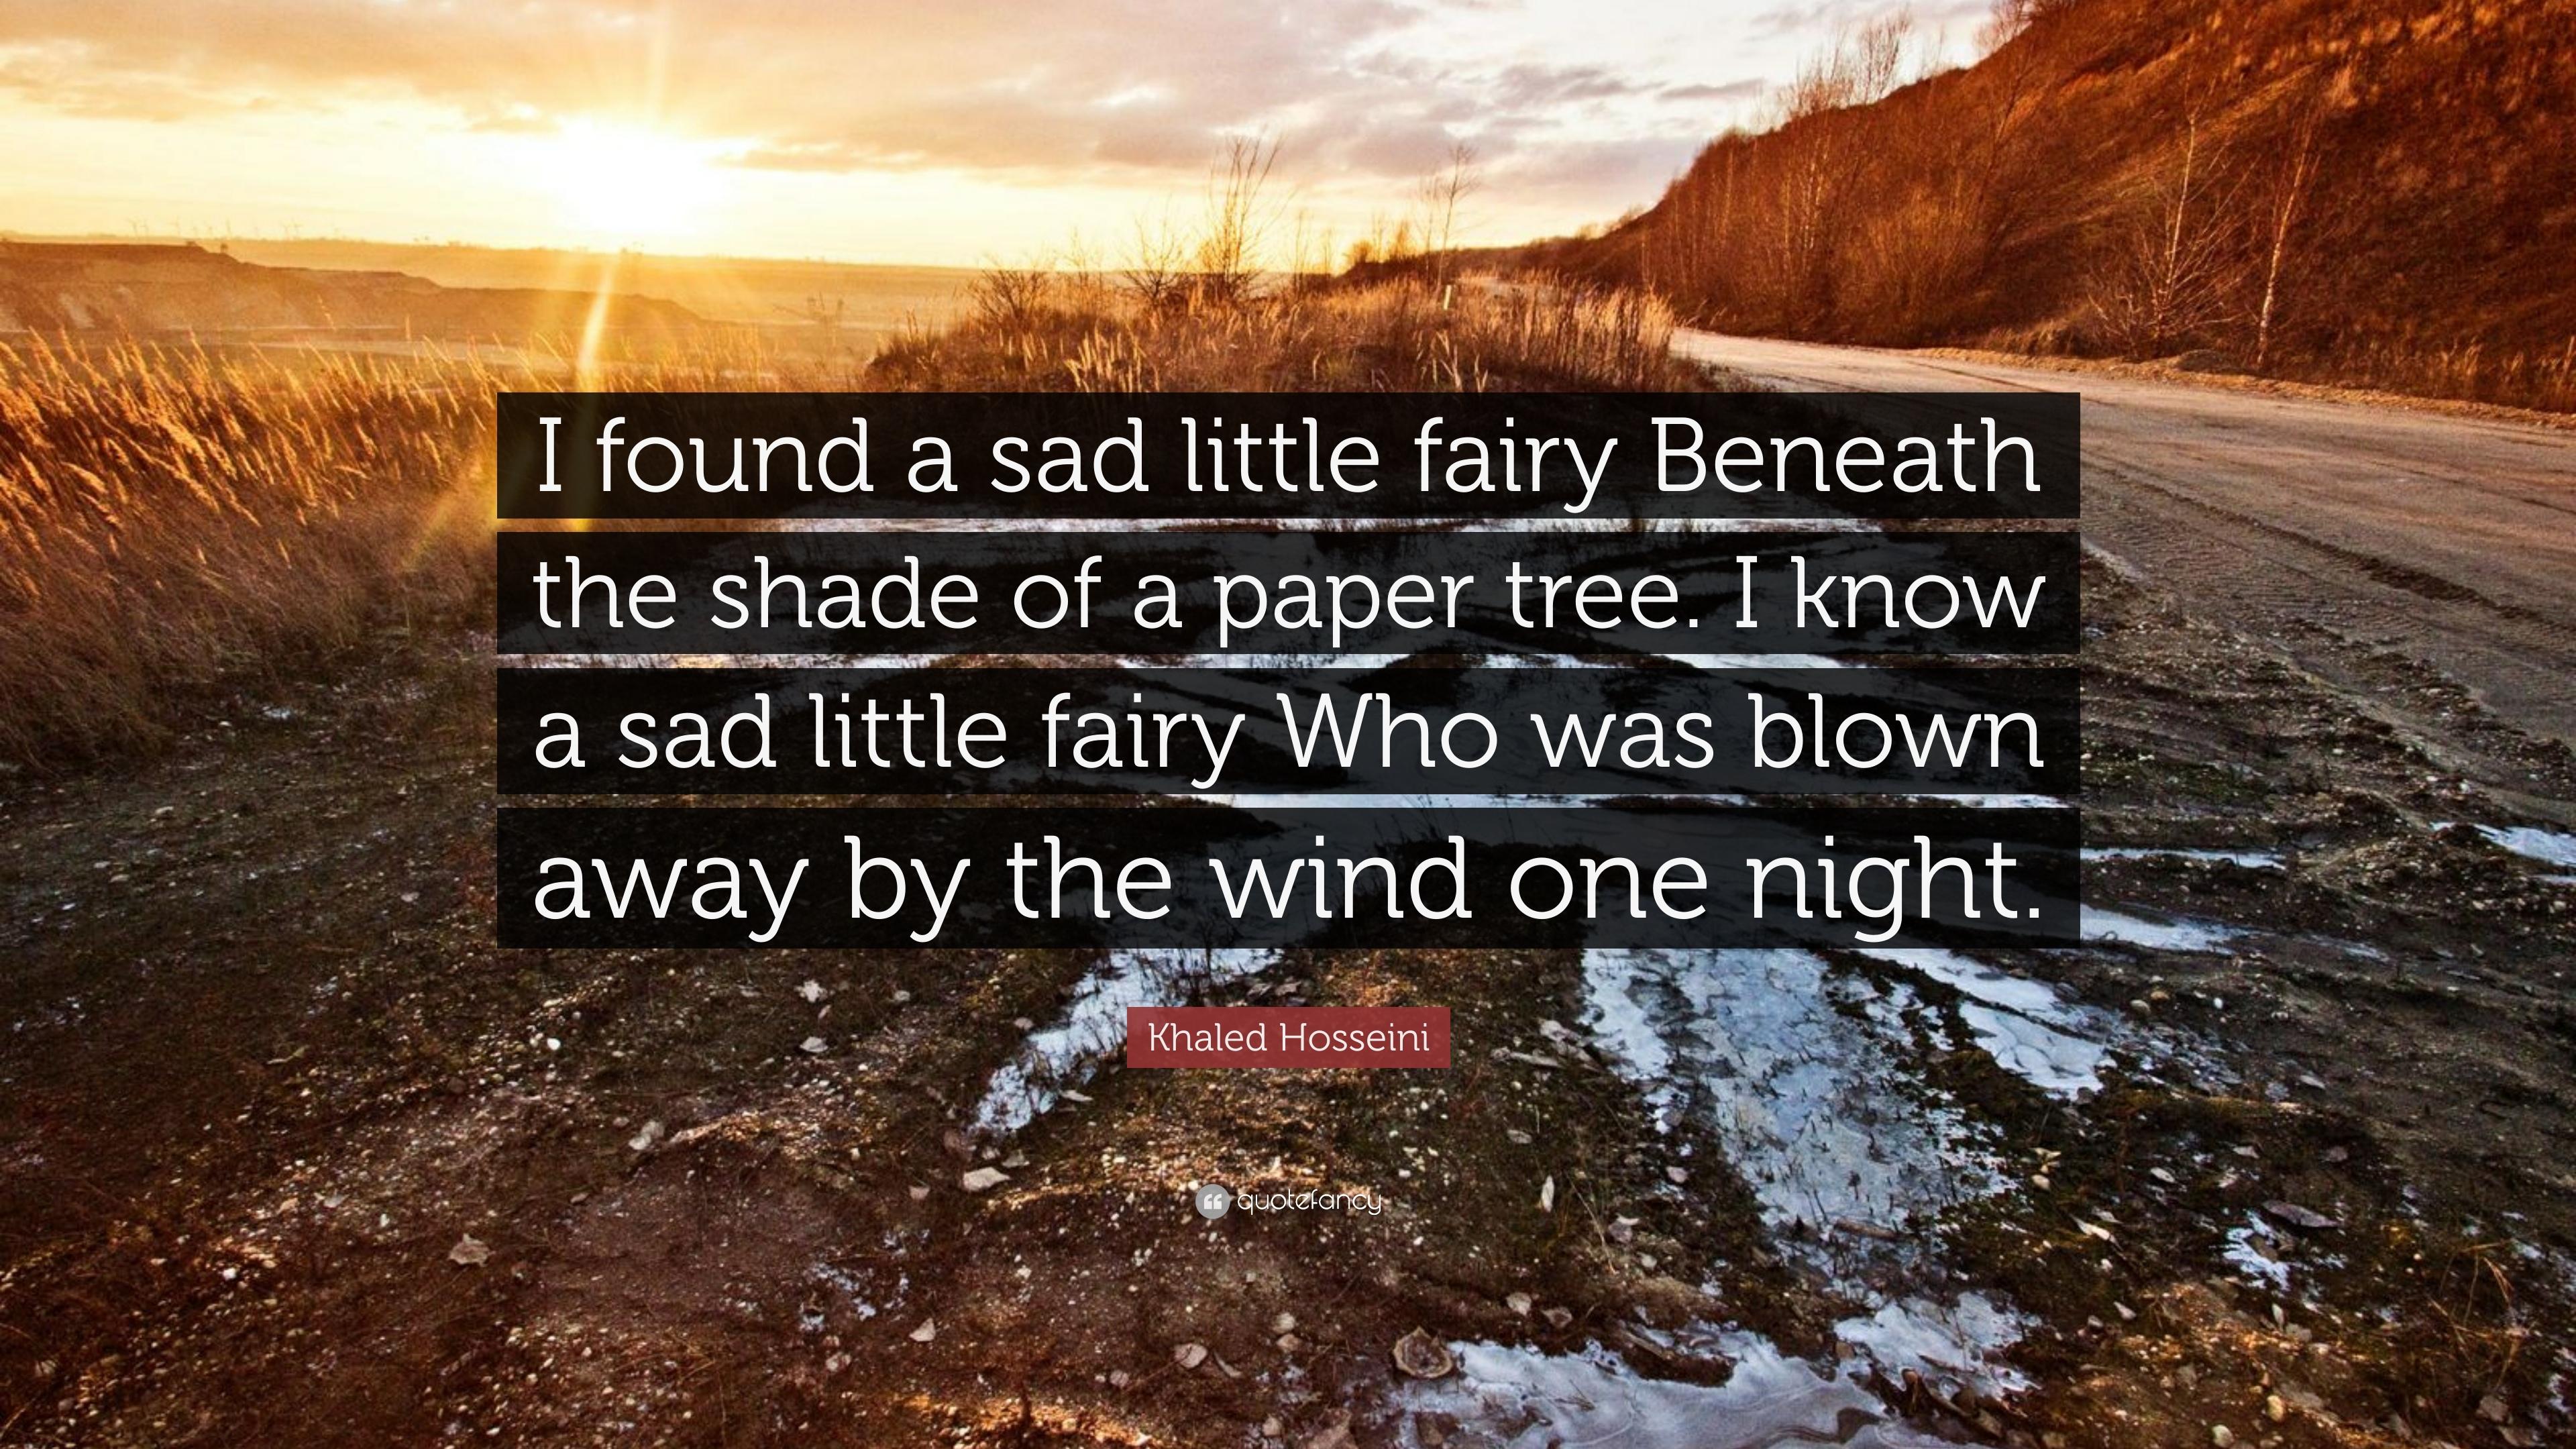 Khaled Hosseini Quote: “I found a sad little fairy Beneath the shade